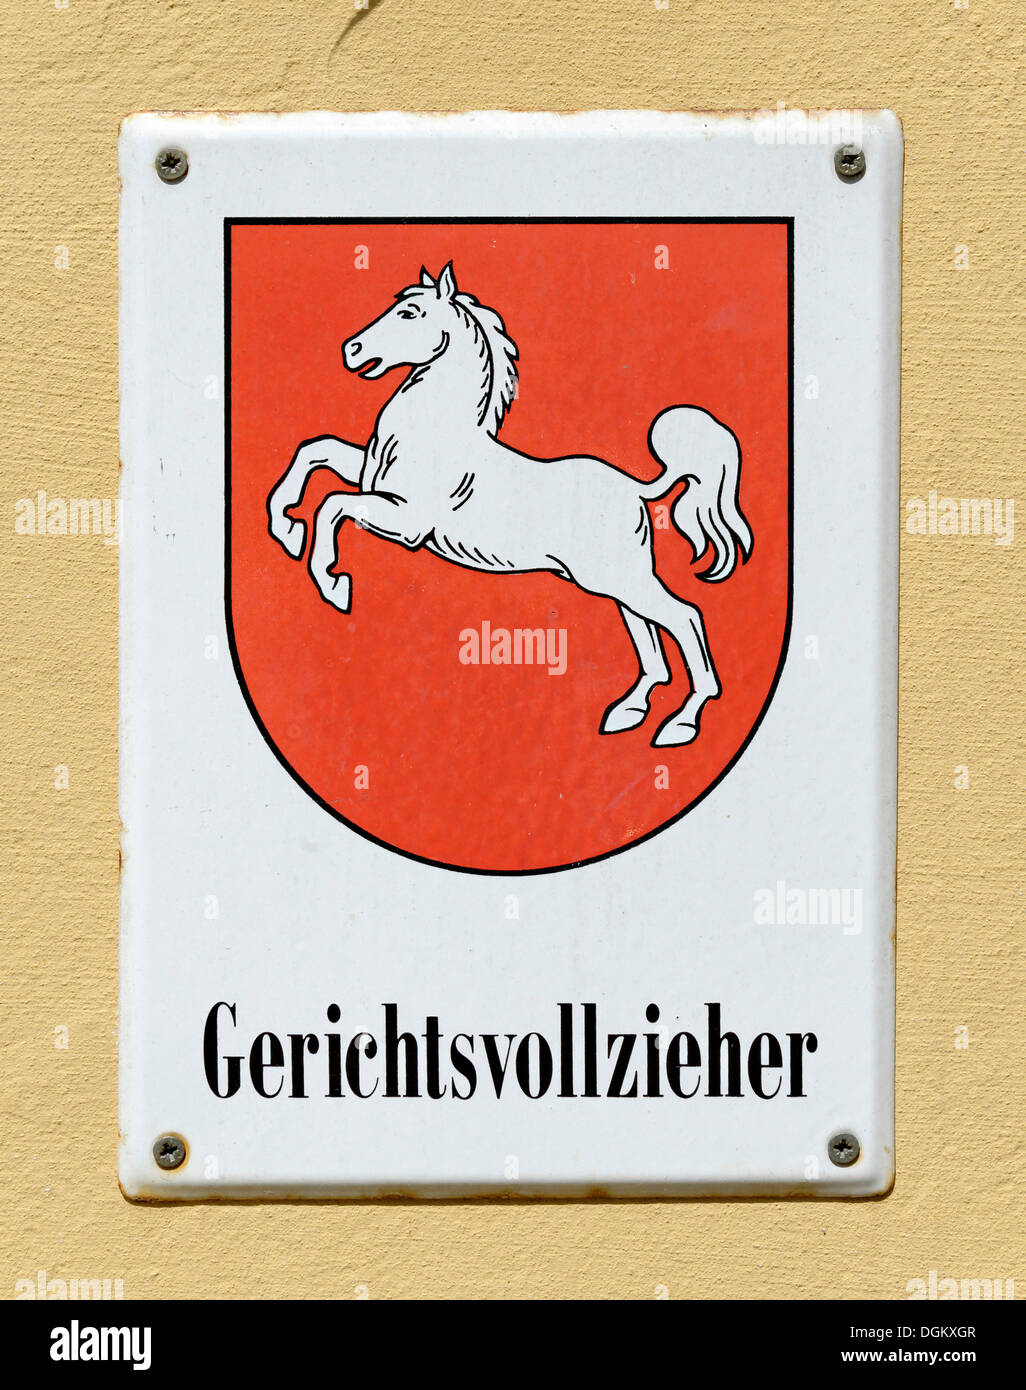 Sign, Gerichtsvollzieher Niedersachsen, bailiff of Lower Saxony, Winsen an der Luhe, Lower Saxony, Germany Stock Photo